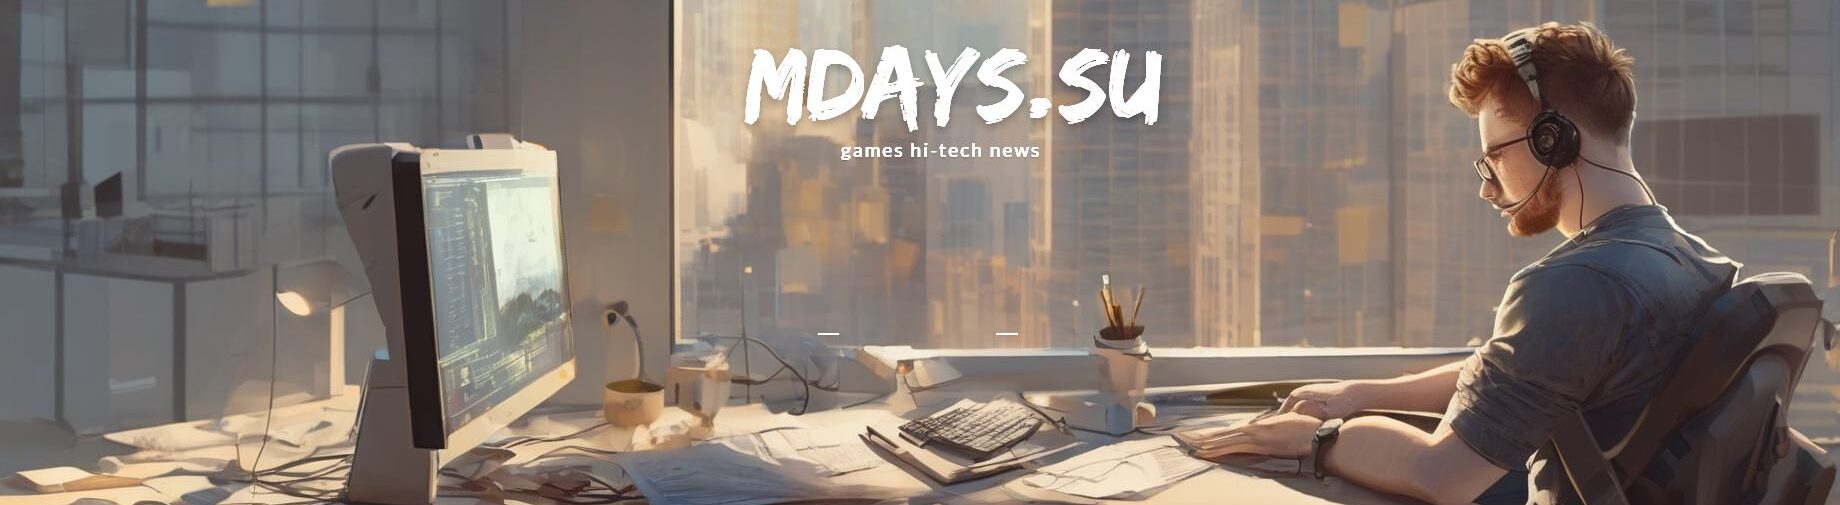 mdays.su - игры, новости, гайды, прохождения